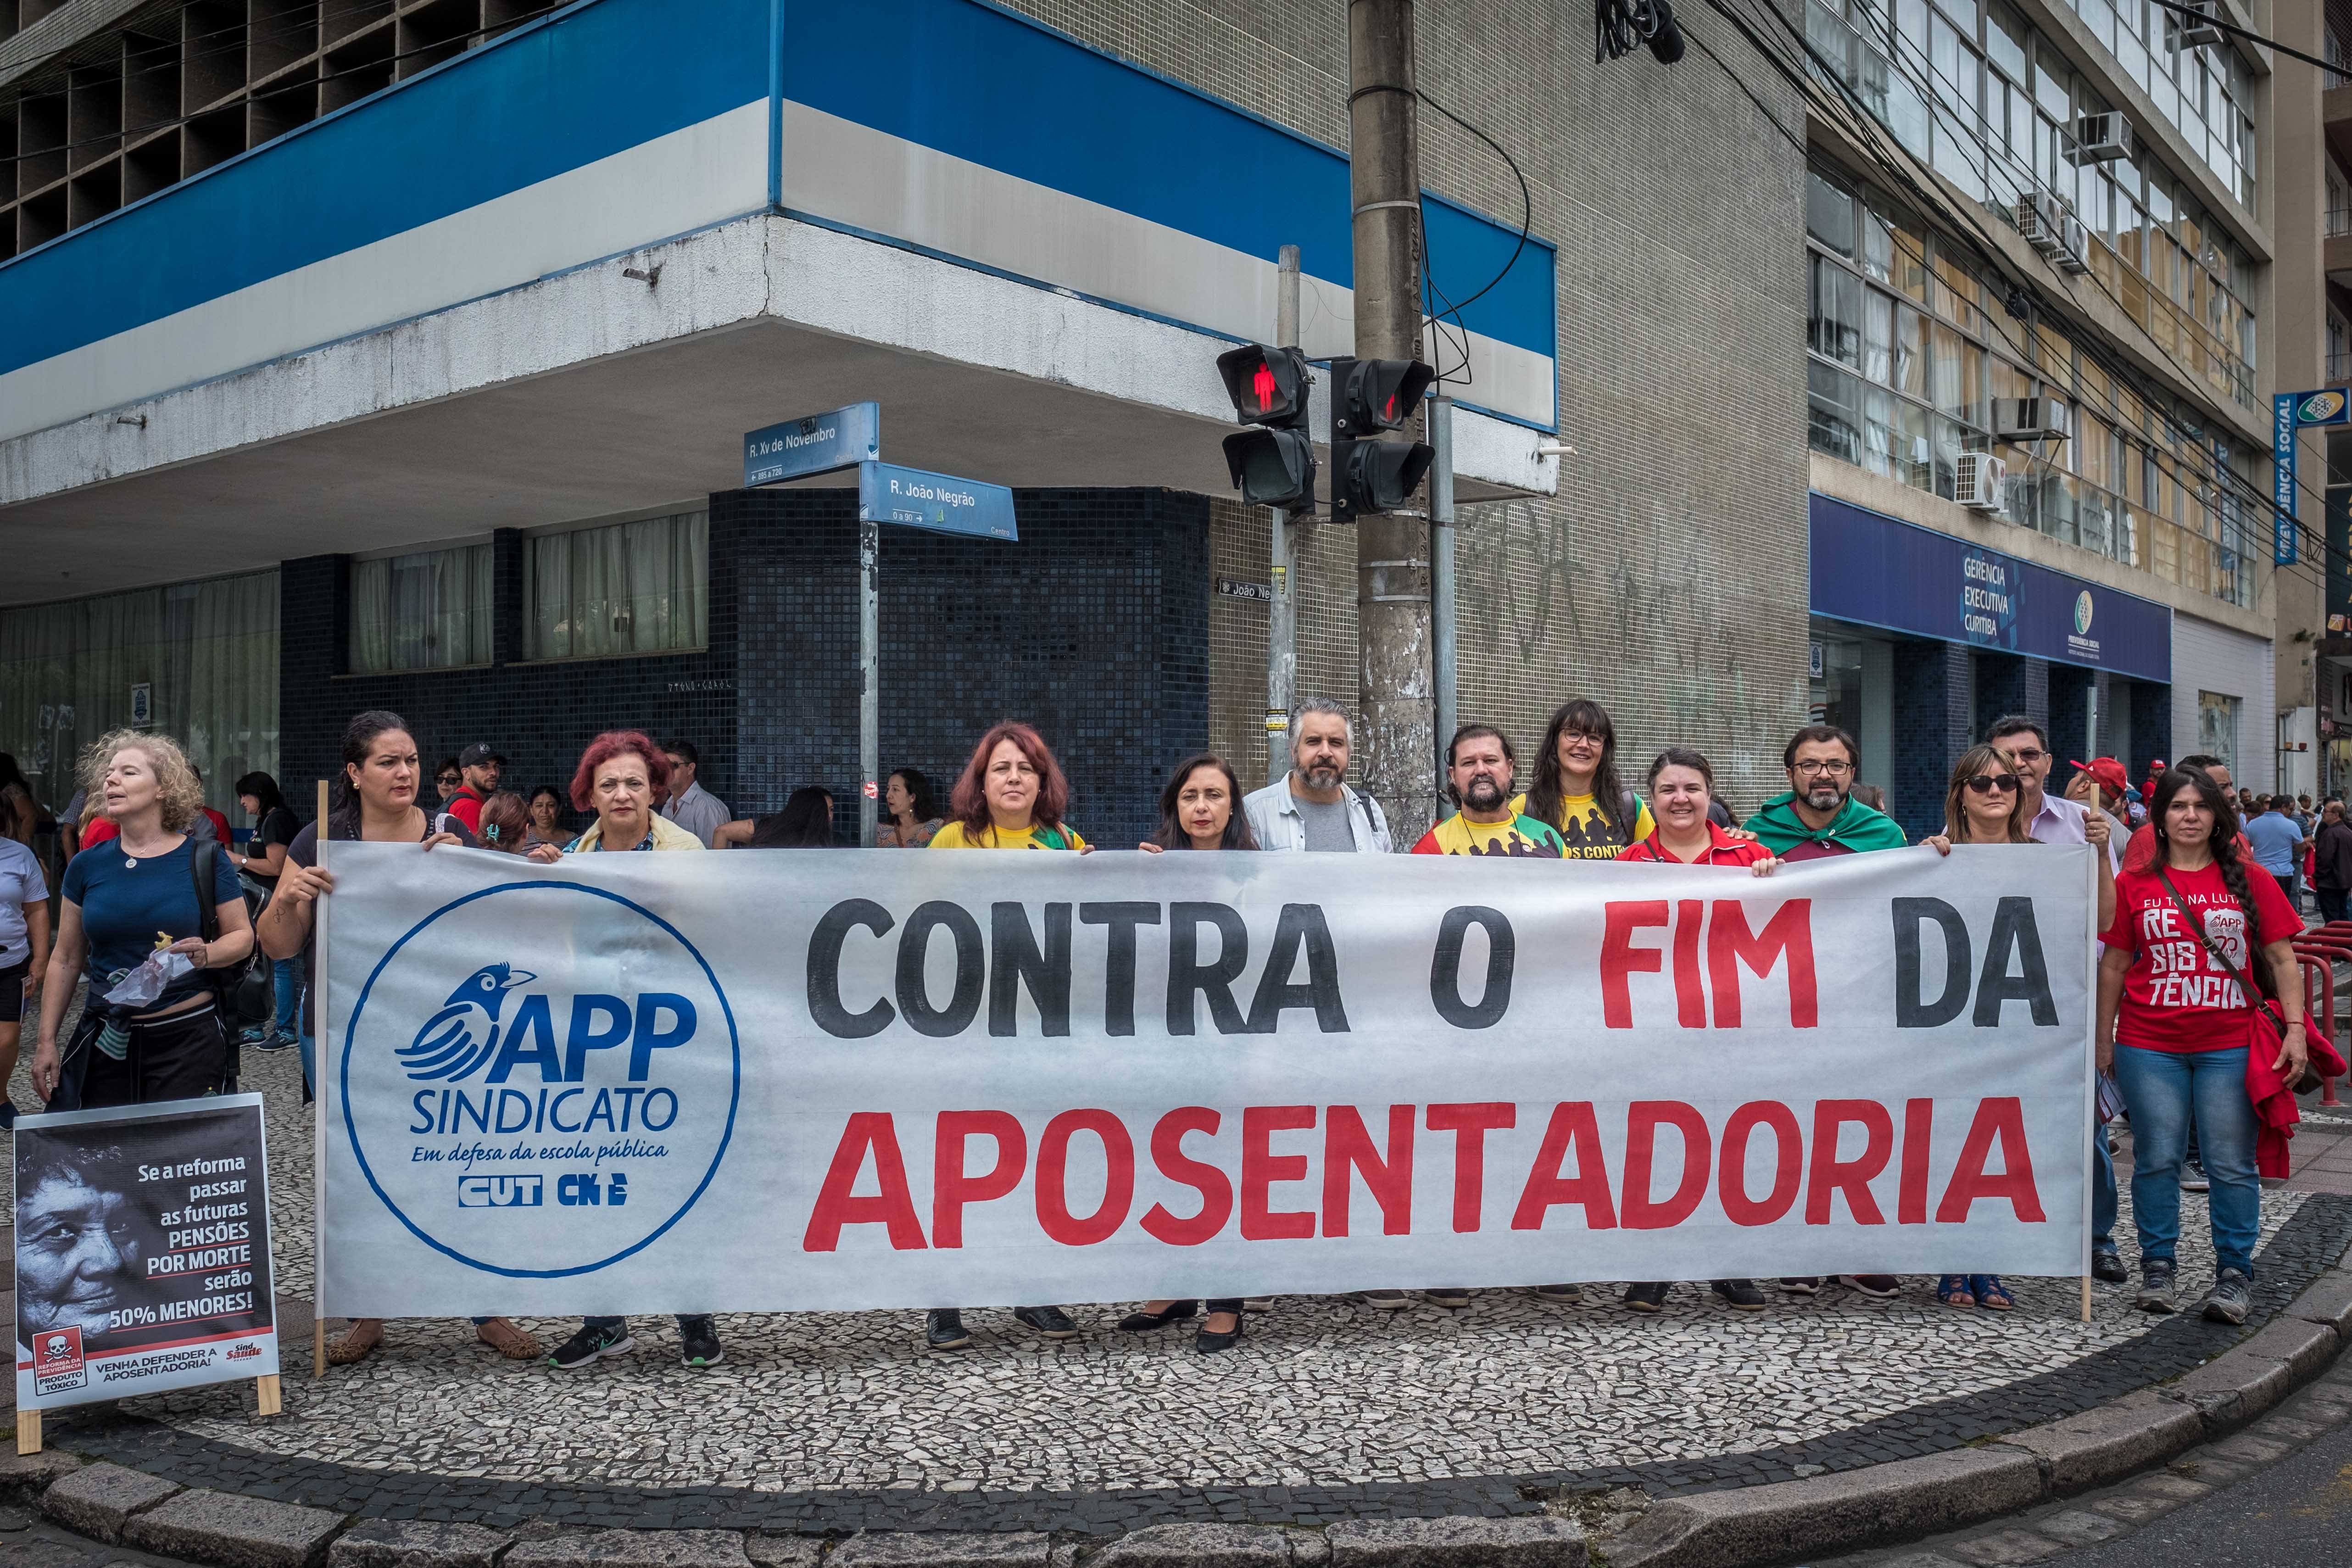 Juliana Cardoso: Apesar de você, Bolsonaro, amanhã há de ser outro dia